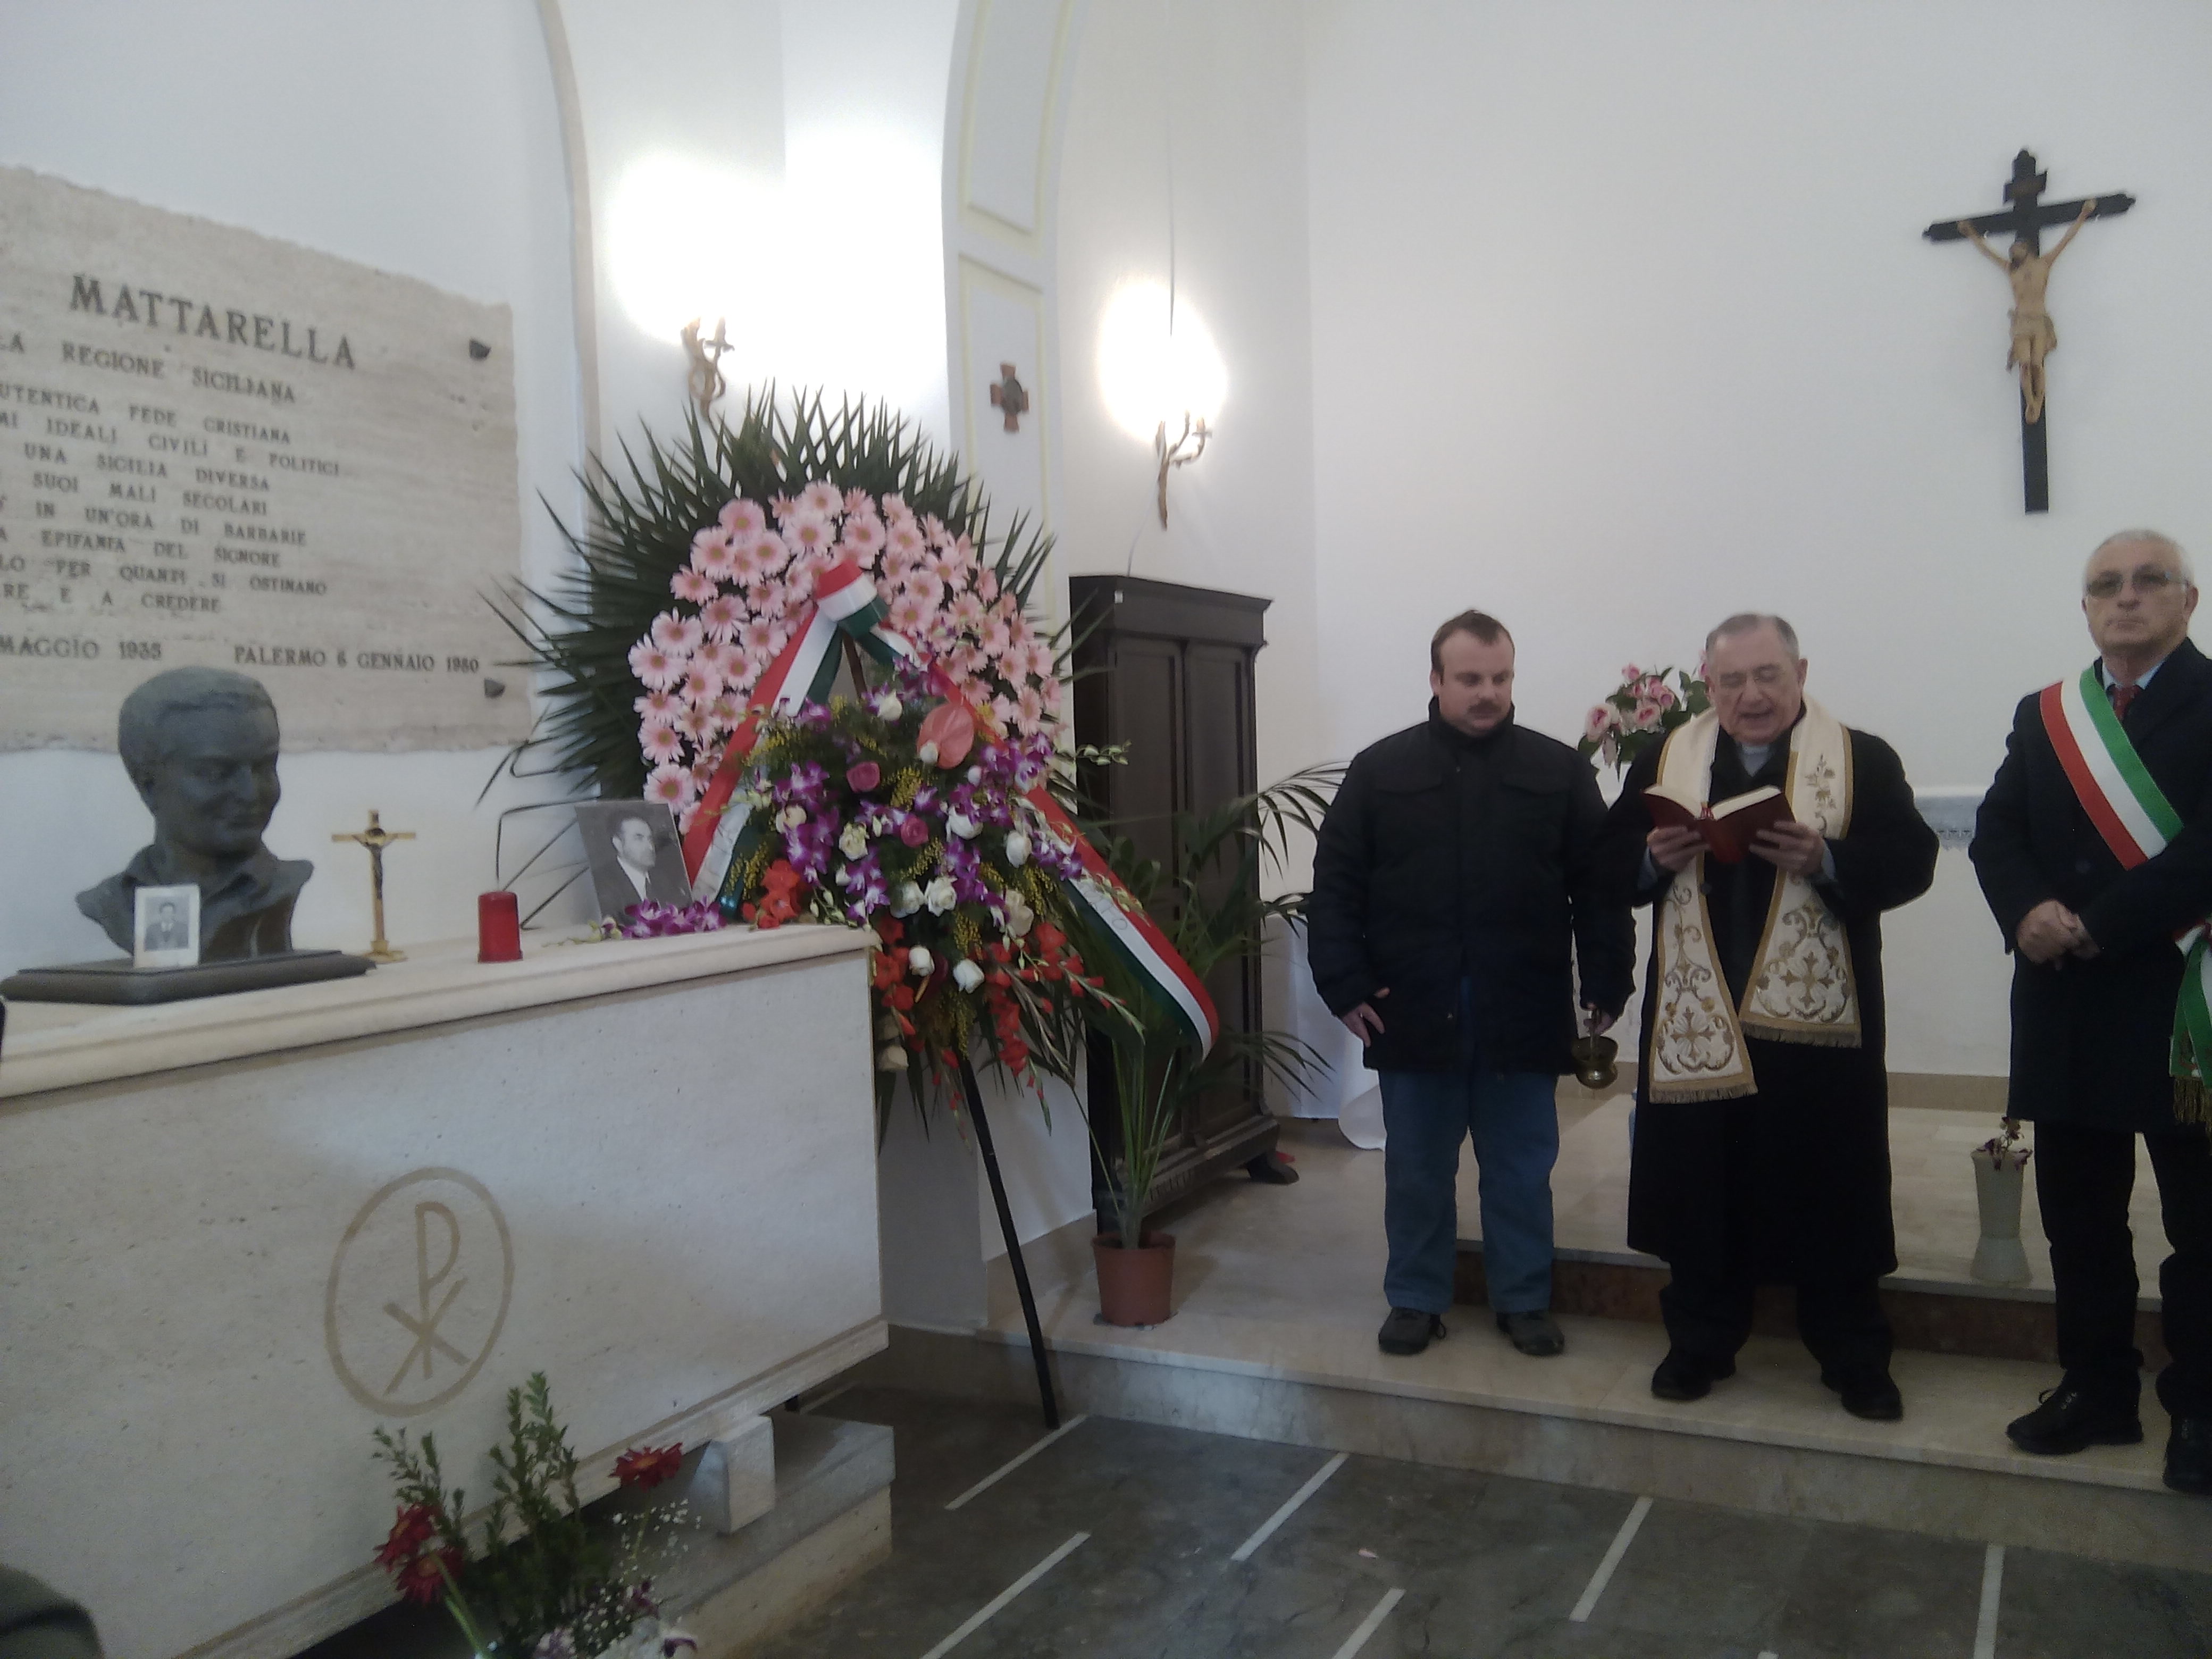 Commemorazione, al cimitero comunale, a 37 anni dall’assassinio di Piersanti Mattarella